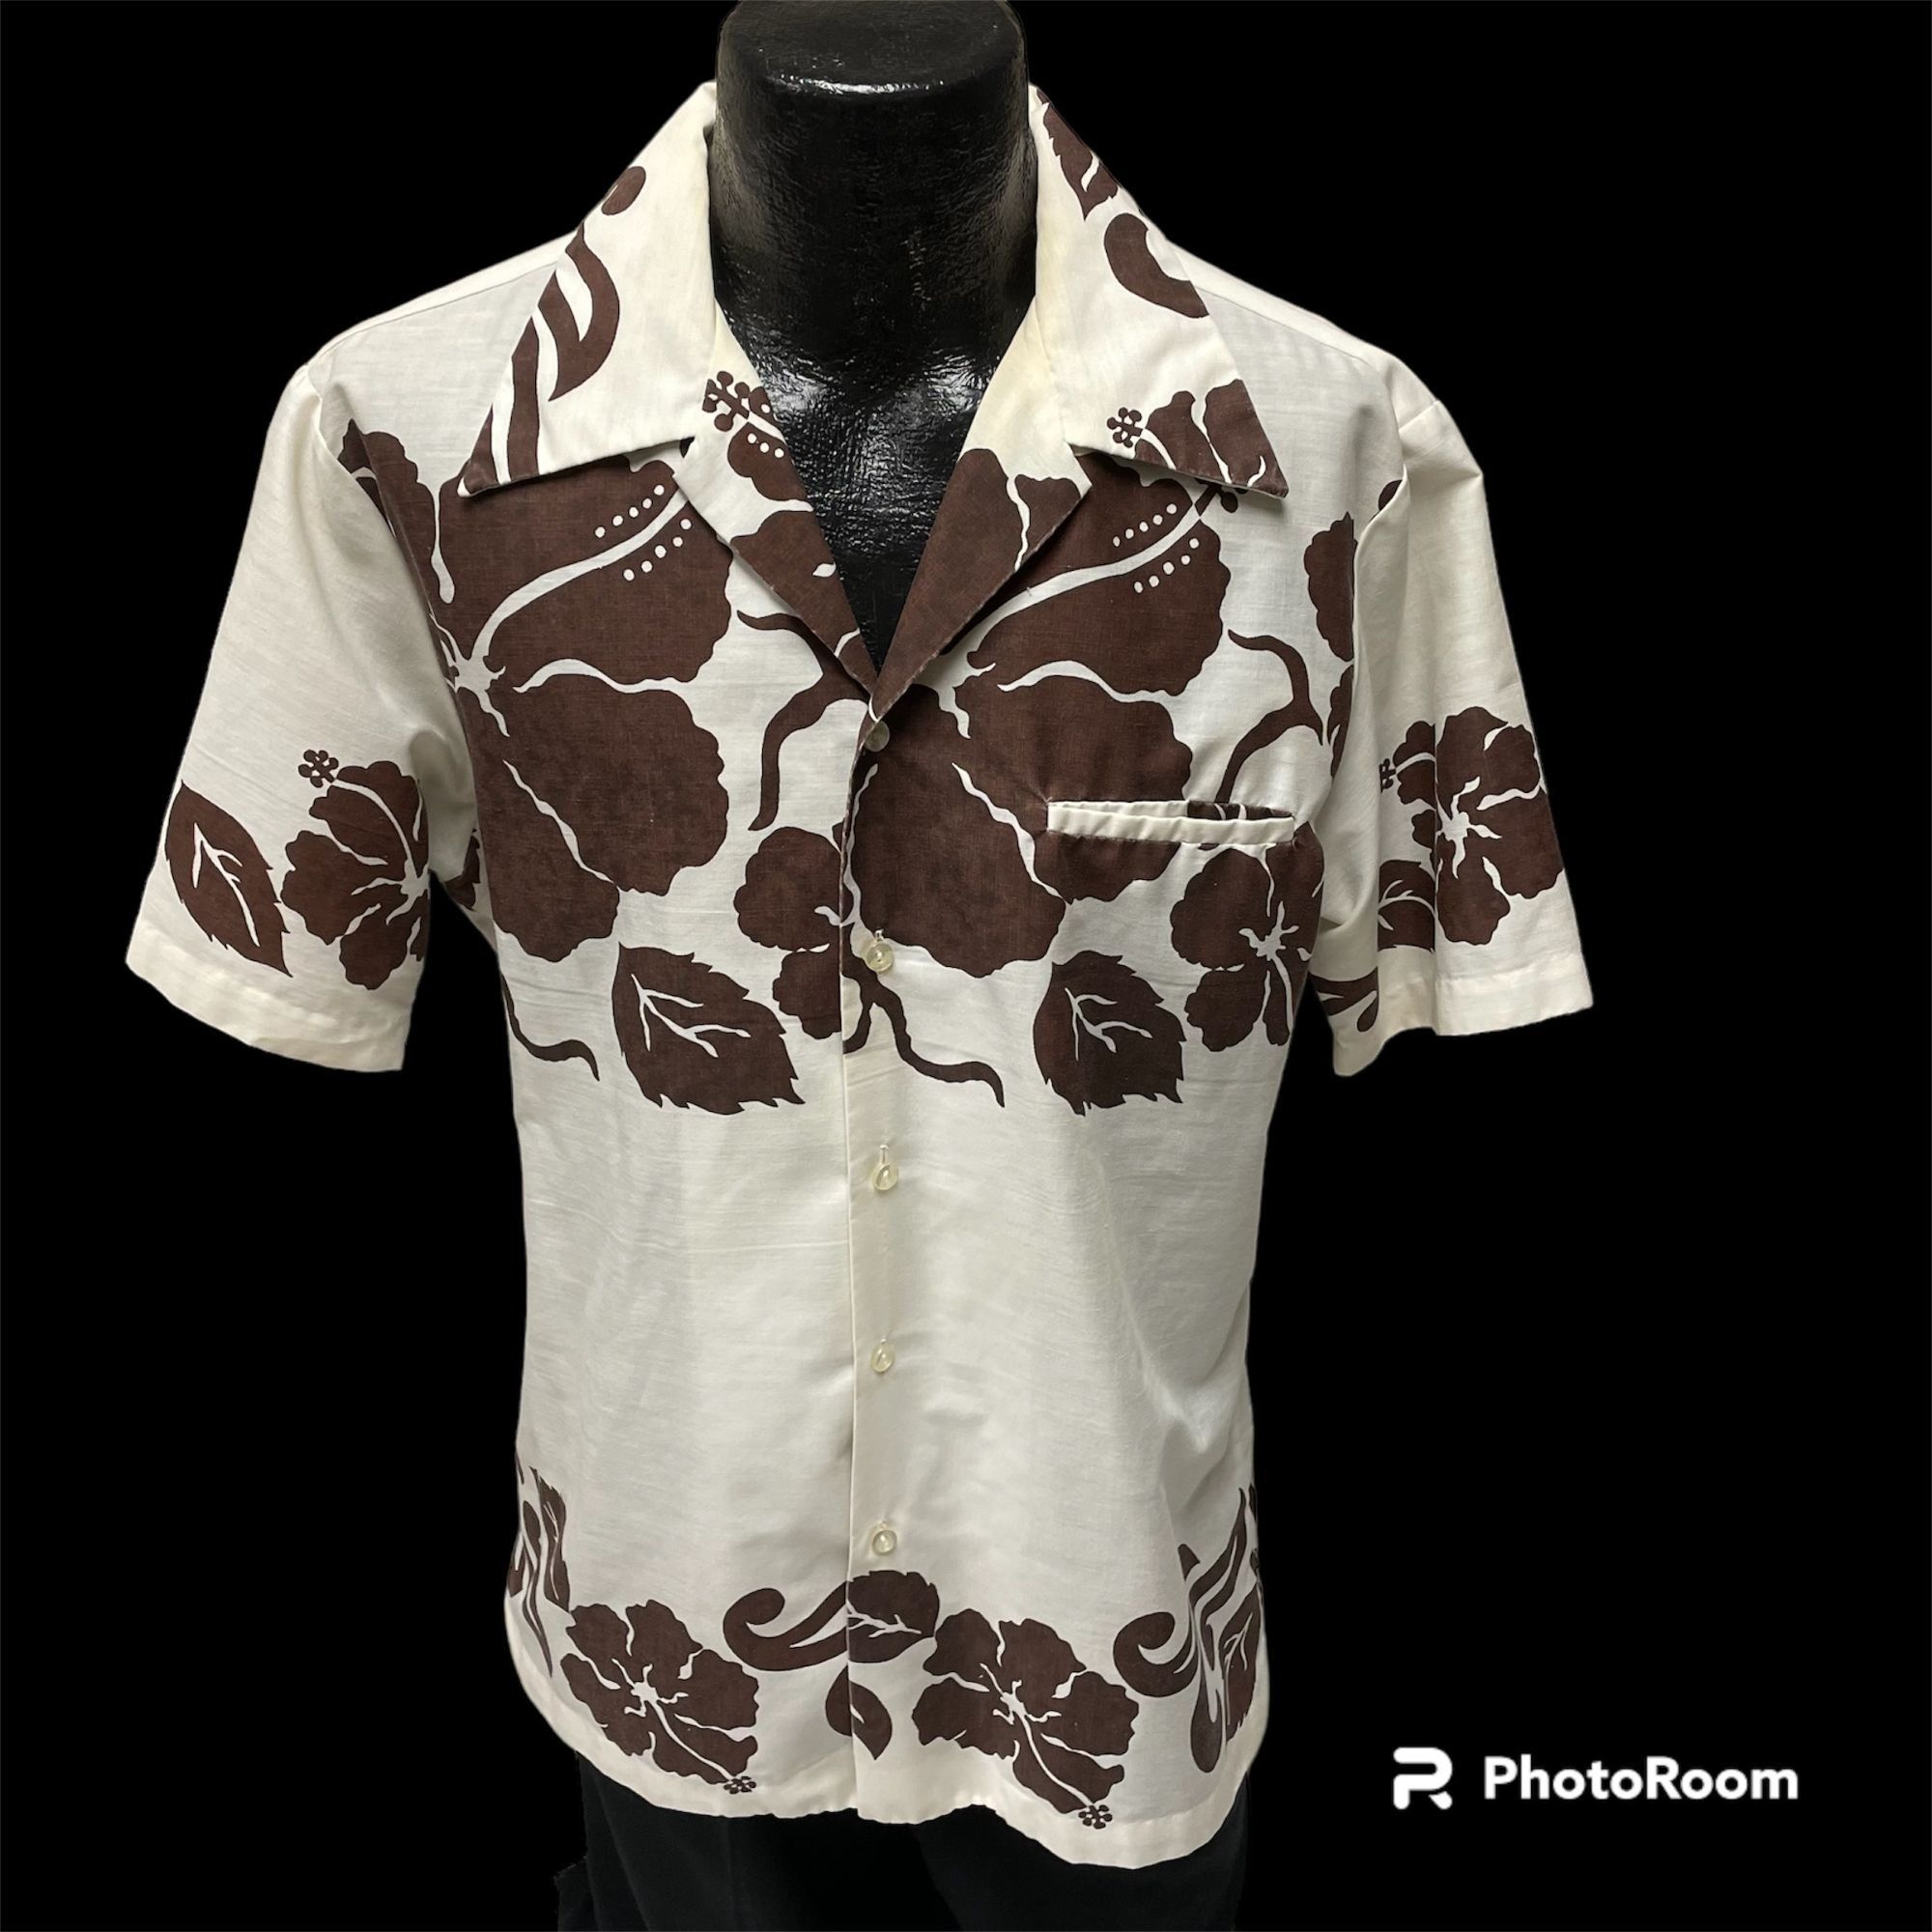 Unkwn 70s Royal Palm MOD White Brown FLORAL Butterfly Collar Shirt Size US L / EU 52-54 / 3 - 1 Preview